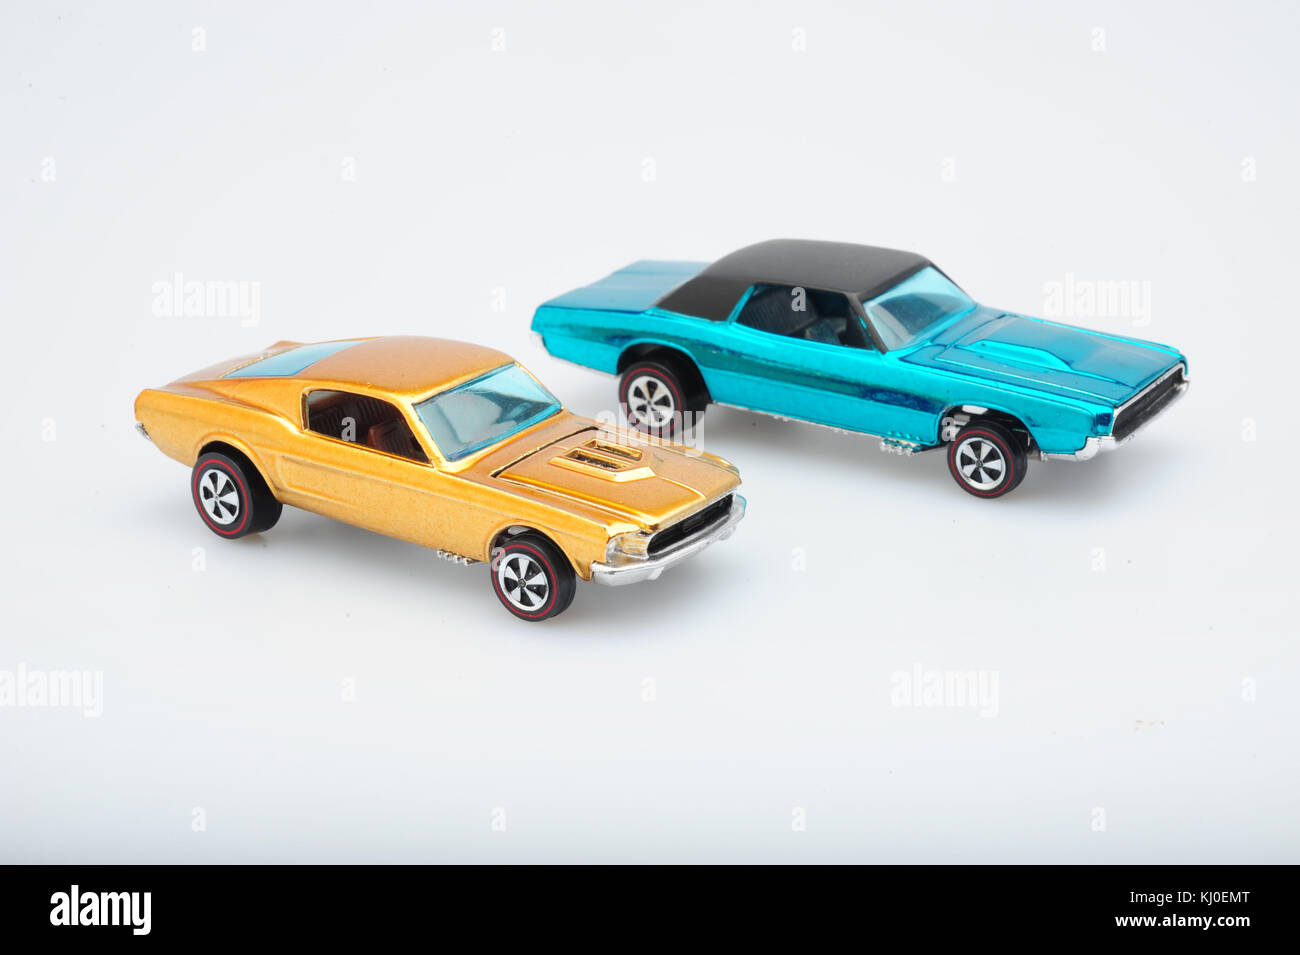 Juguetes vintage clásico Hot Wheels autos hechos por Mattel usa automóviles en miniatura Foto de stock